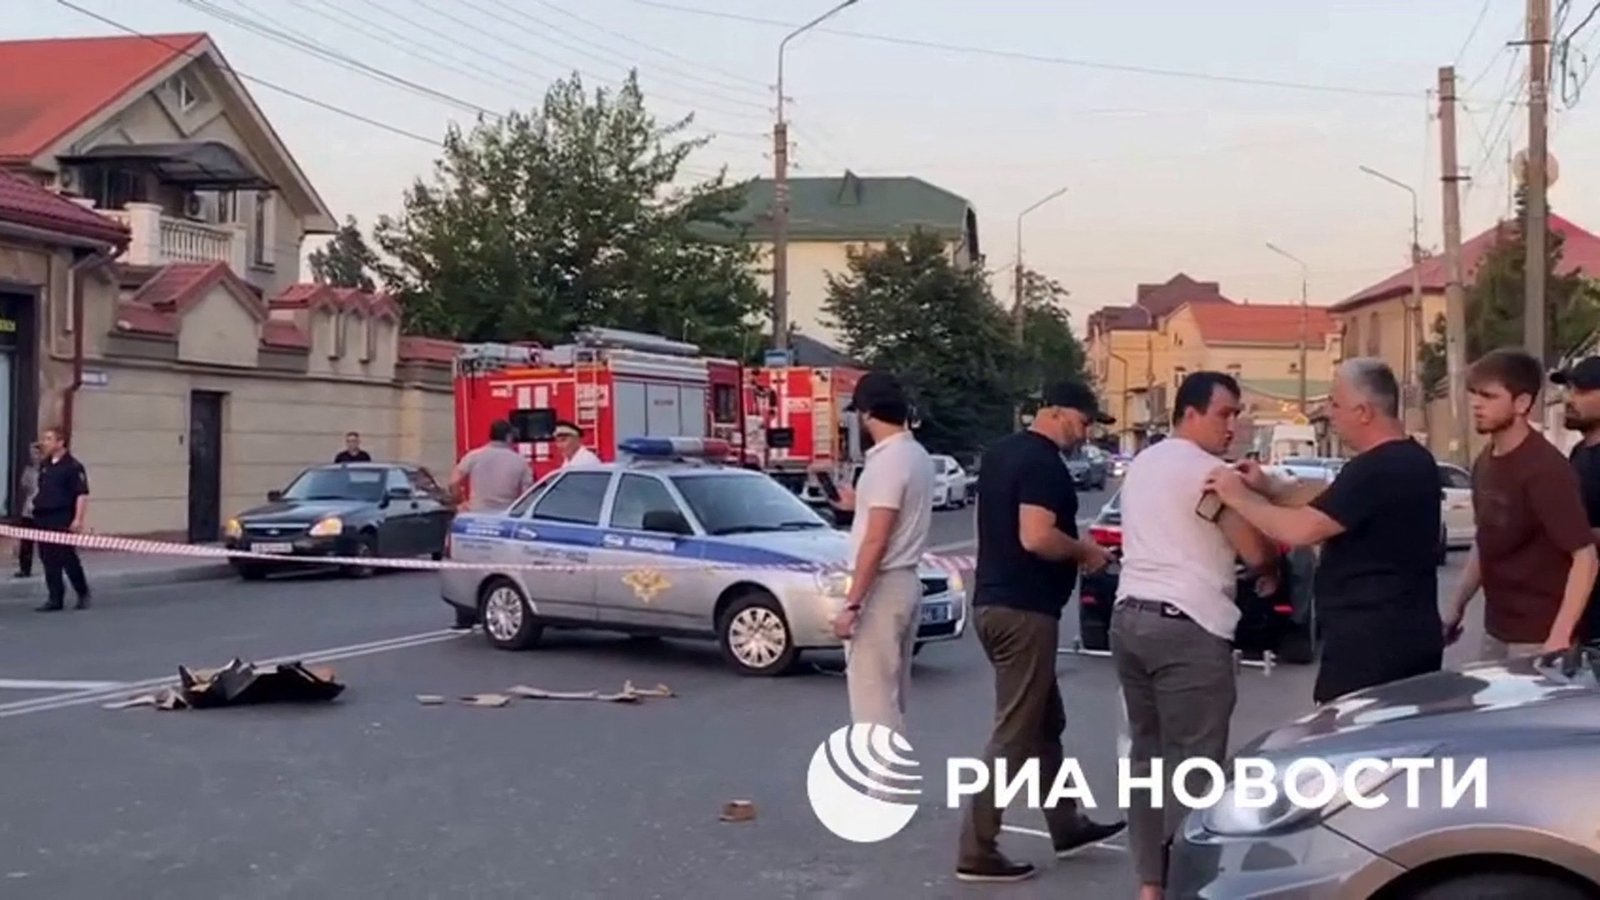 ‘Terror attack’ in Russia’s Dagestan: Gunmen kill police, priest